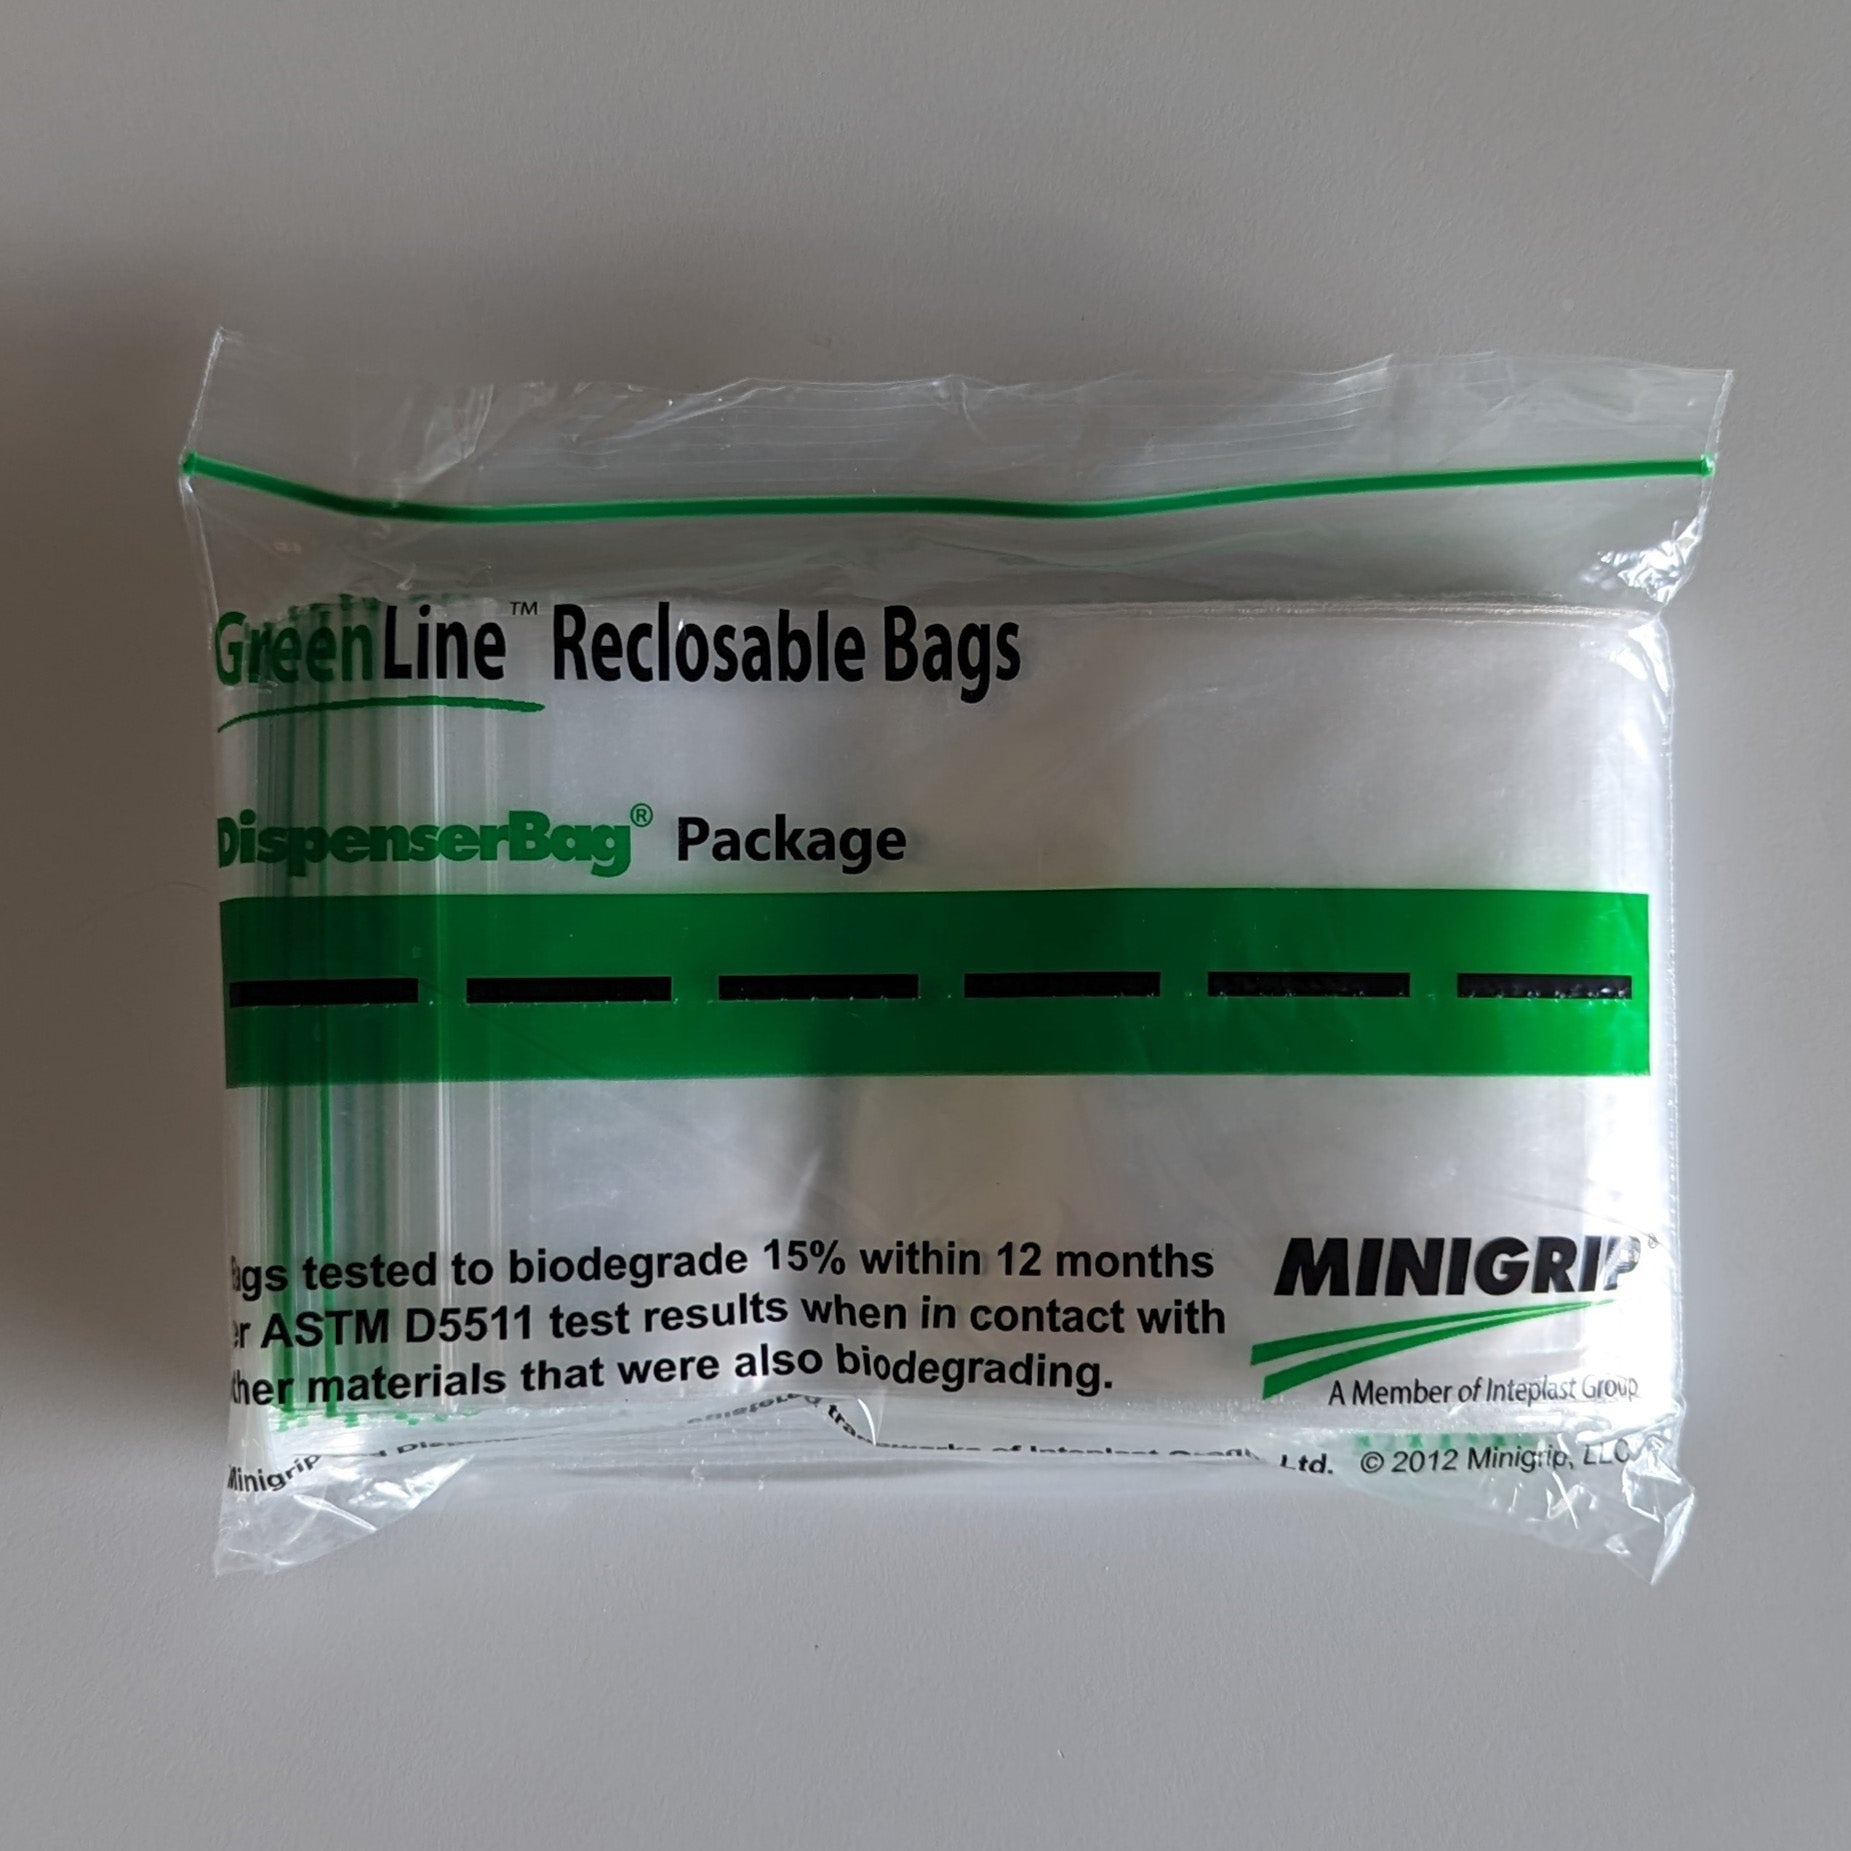 Bundle of 4 Quart size Compostable Zip bags.